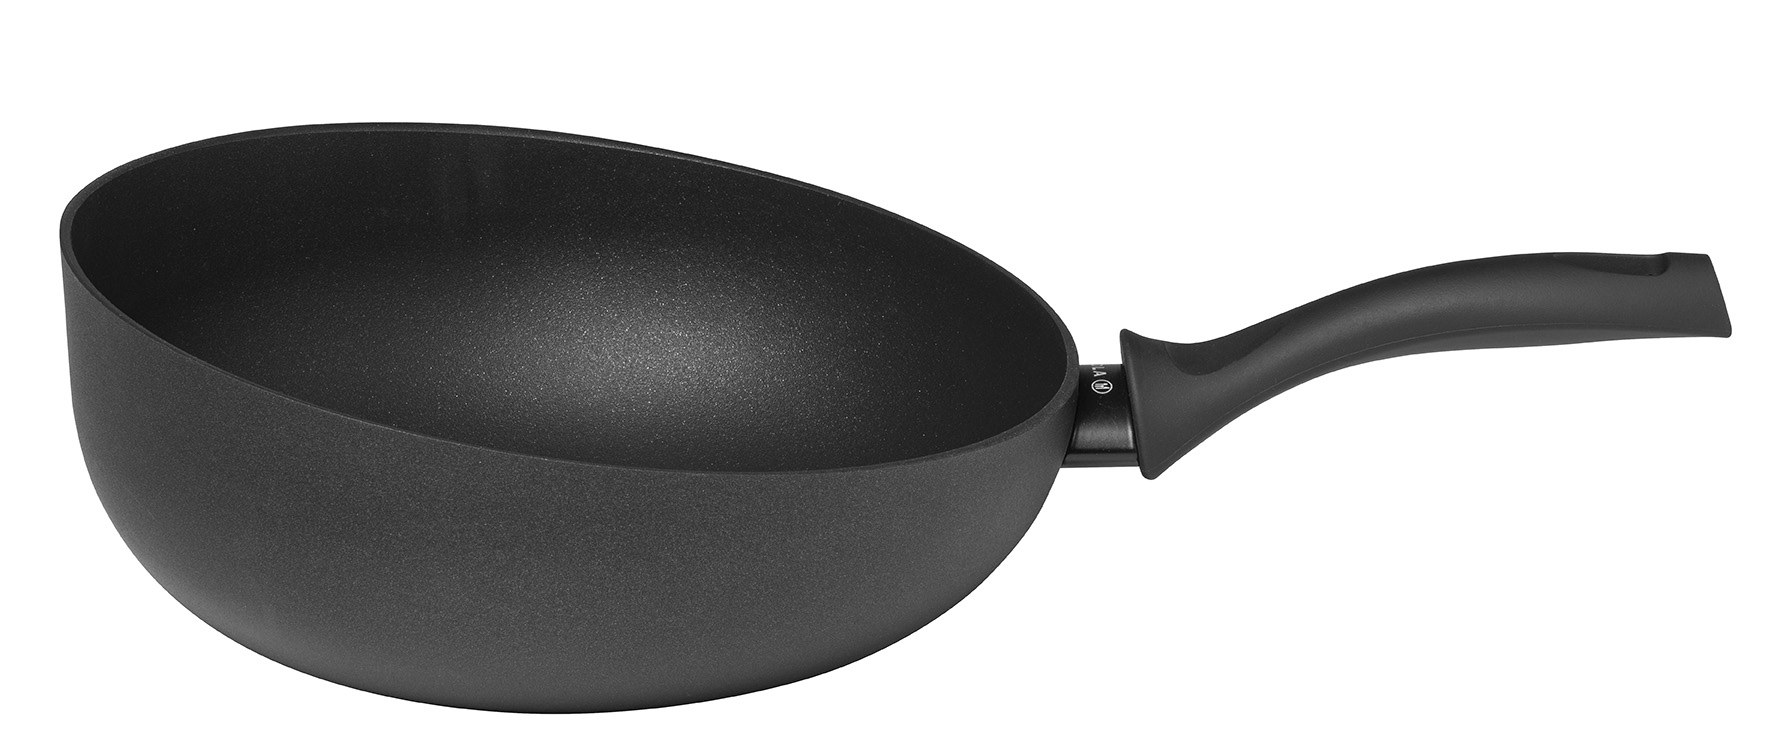 Bloody Maria Pelmel Middelgrote wokpan kopen? Ga voor de Sola wokpan 28 cm | Sola